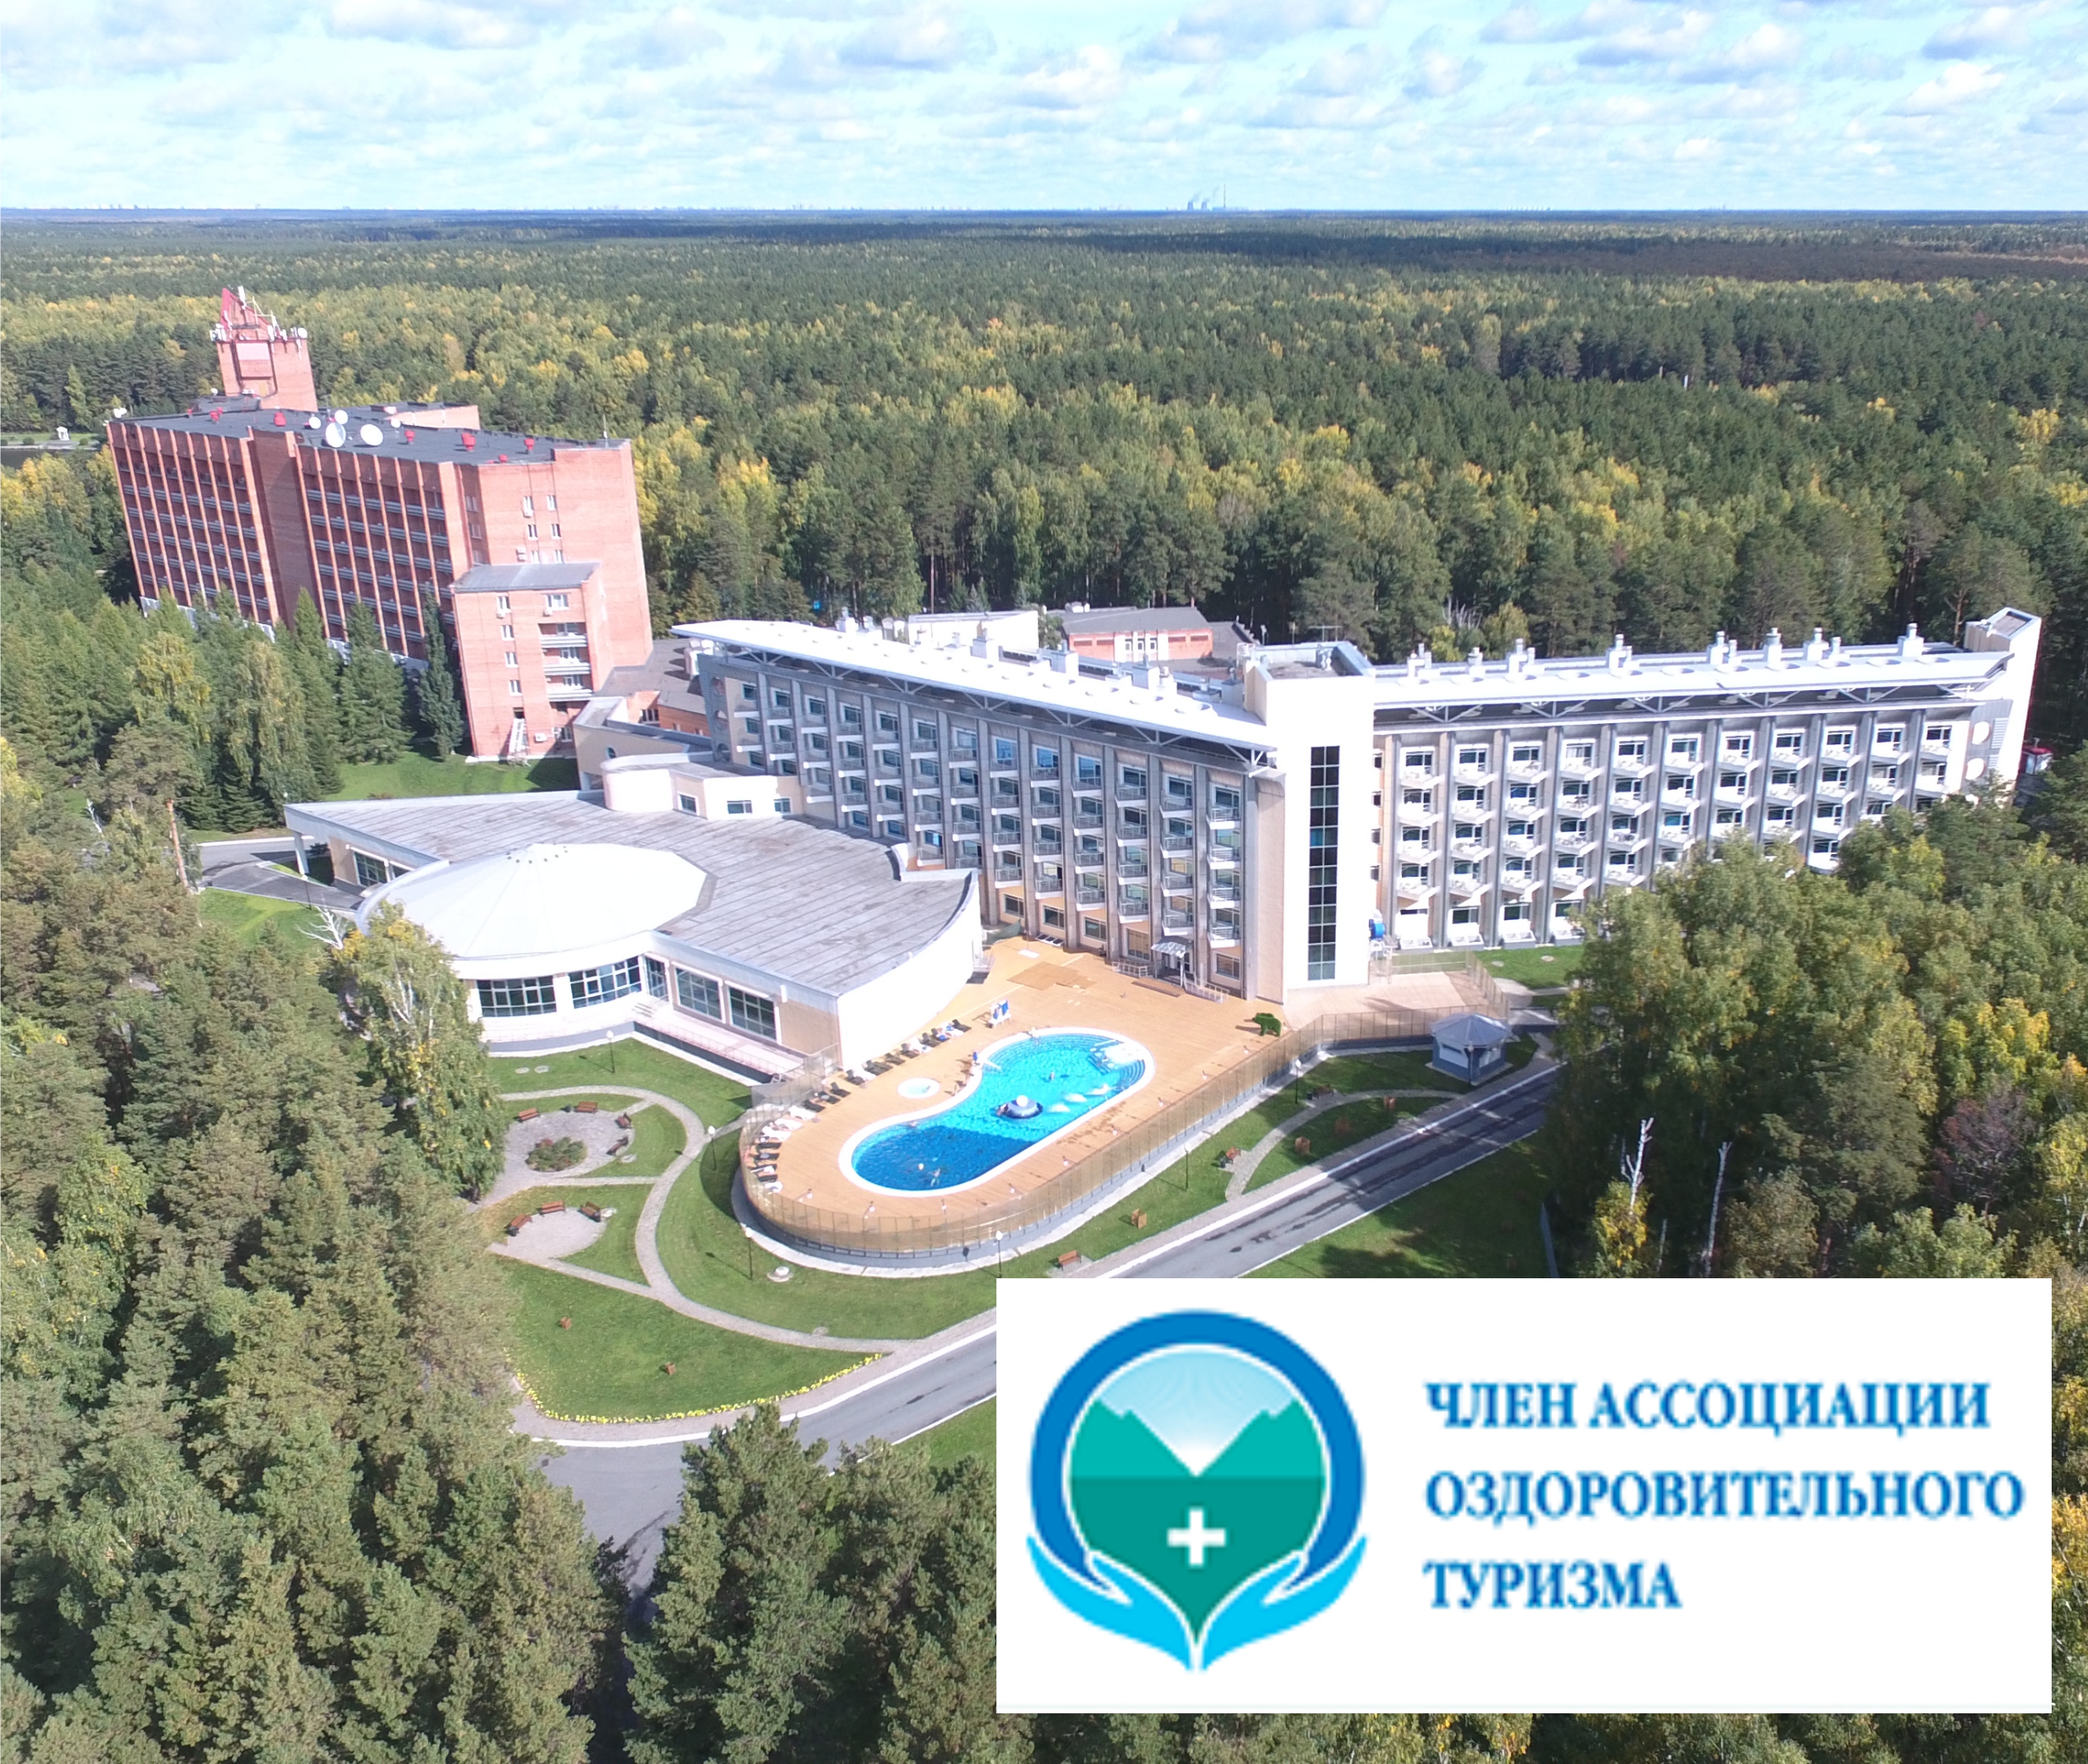 Siberia Resort & Spa присоединилась к Ассоциации оздоровительного туризма и корпоративного здоровья